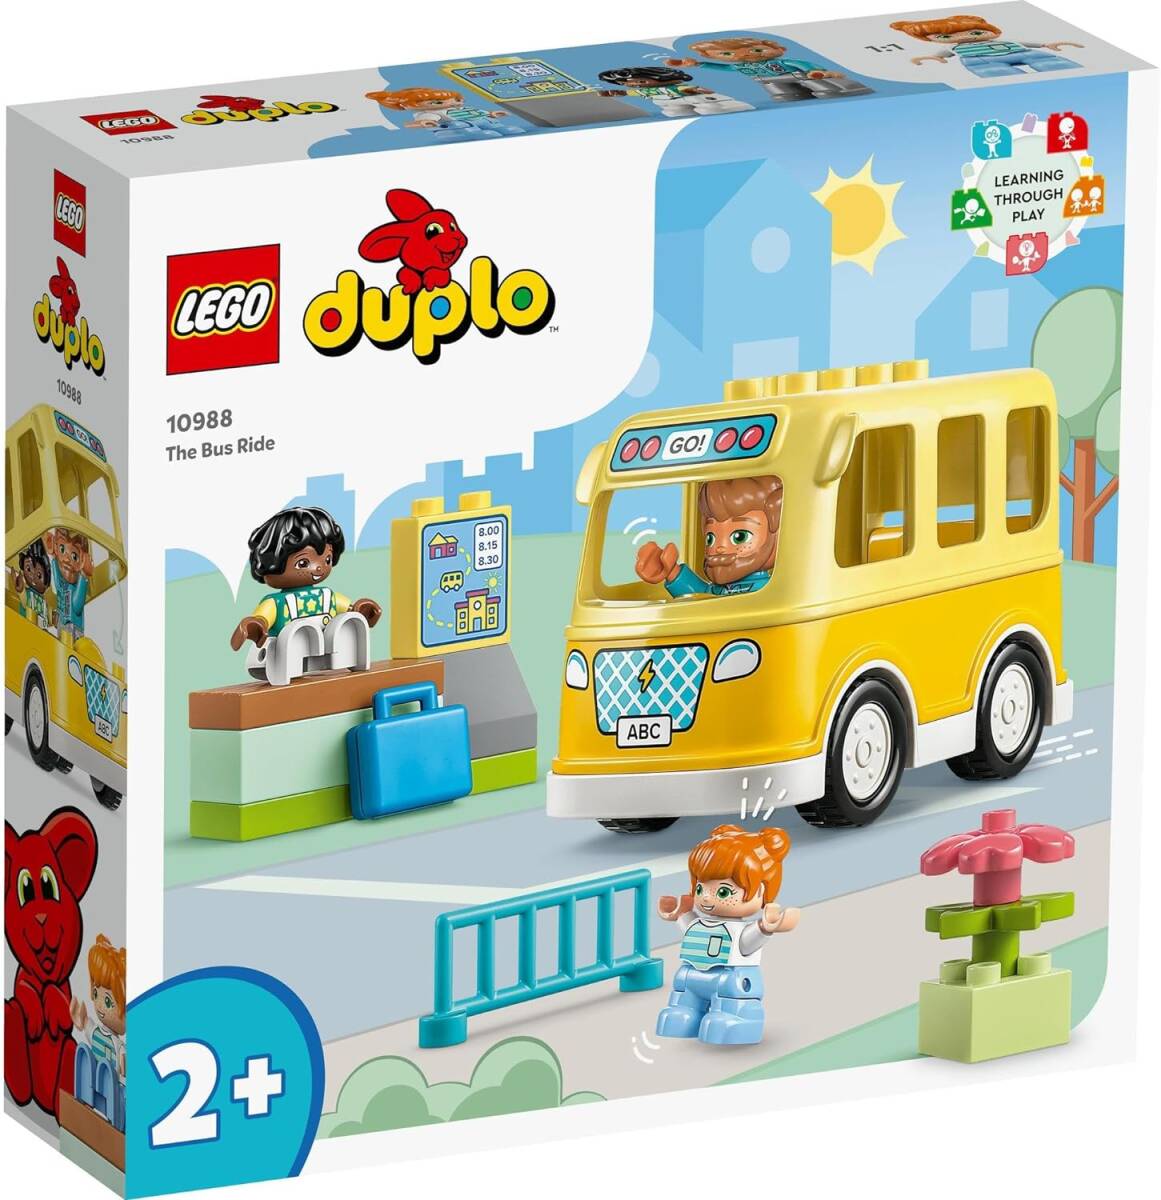  Duplo. .. school bus Lego (LEGO) Duplo Duplo. .. school bus 10988 toy block present 